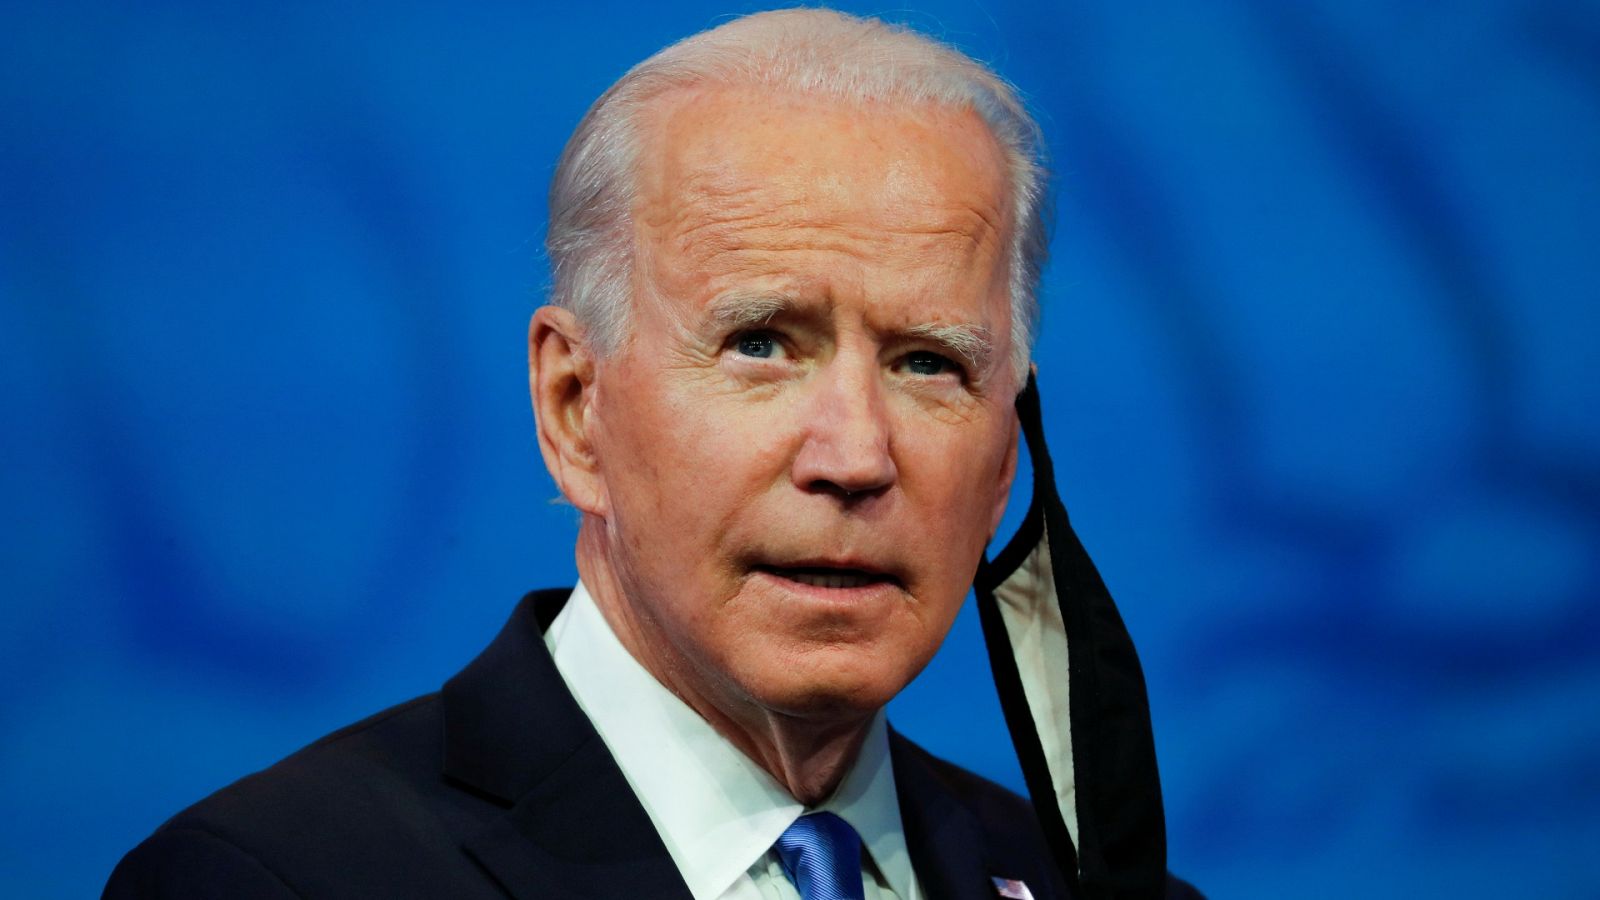 El presidente electo Joe Biden comparece en un discurso televisado a la nación tras la certificación del Colegio Electoral